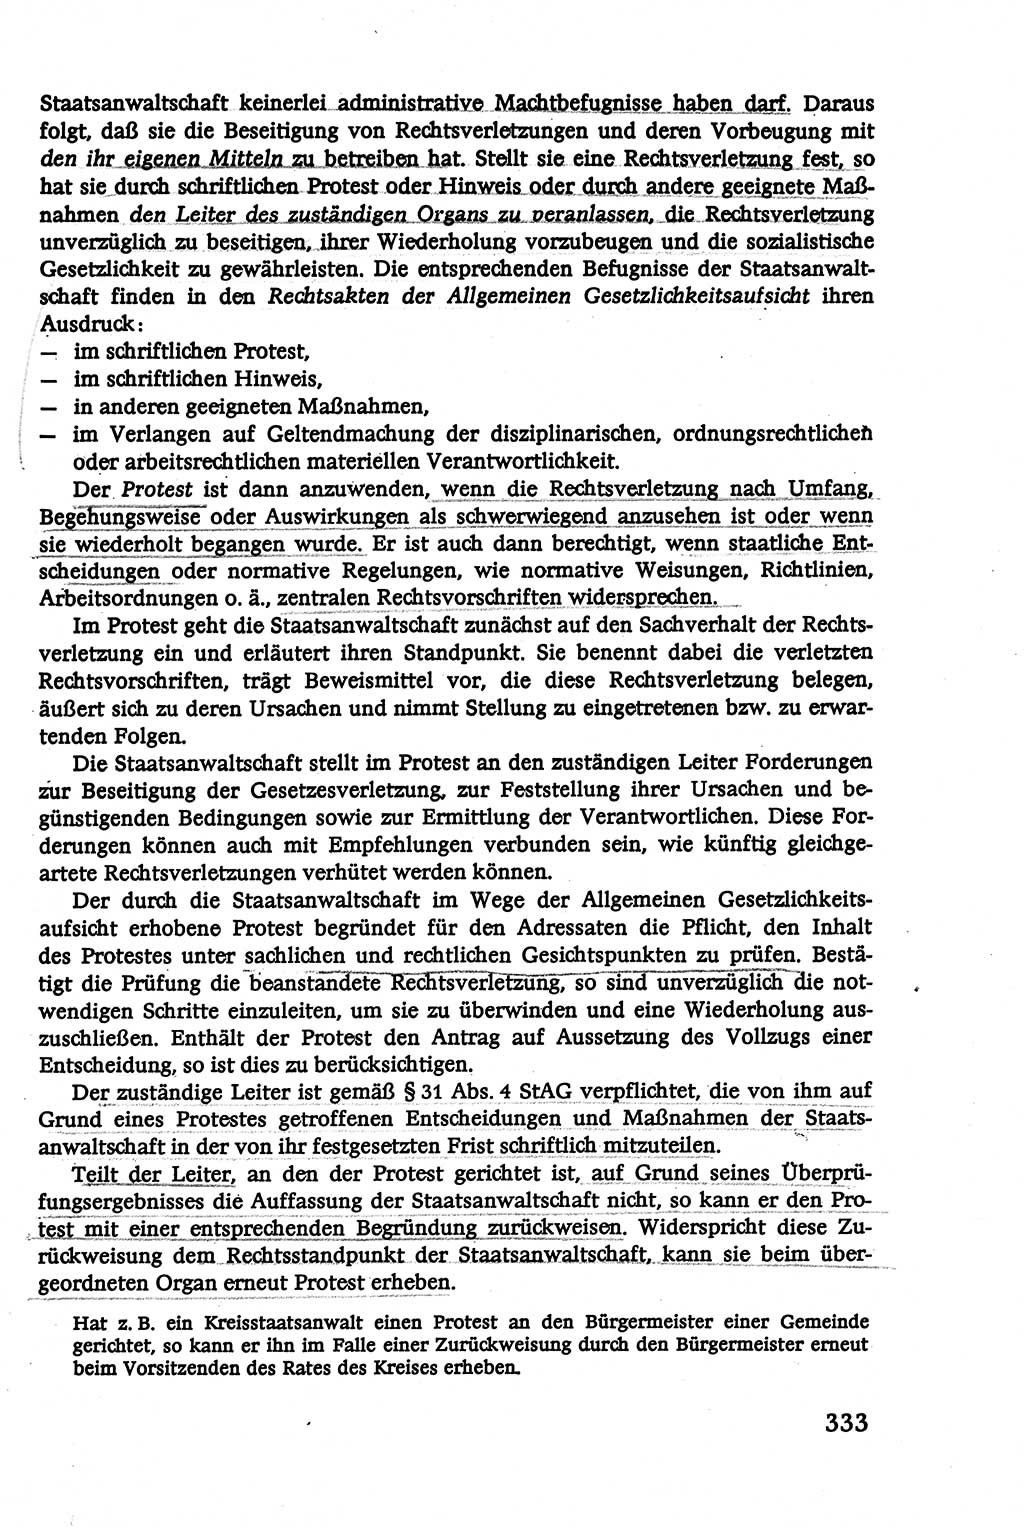 Verwaltungsrecht [Deutsche Demokratische Republik (DDR)], Lehrbuch 1979, Seite 333 (Verw.-R. DDR Lb. 1979, S. 333)